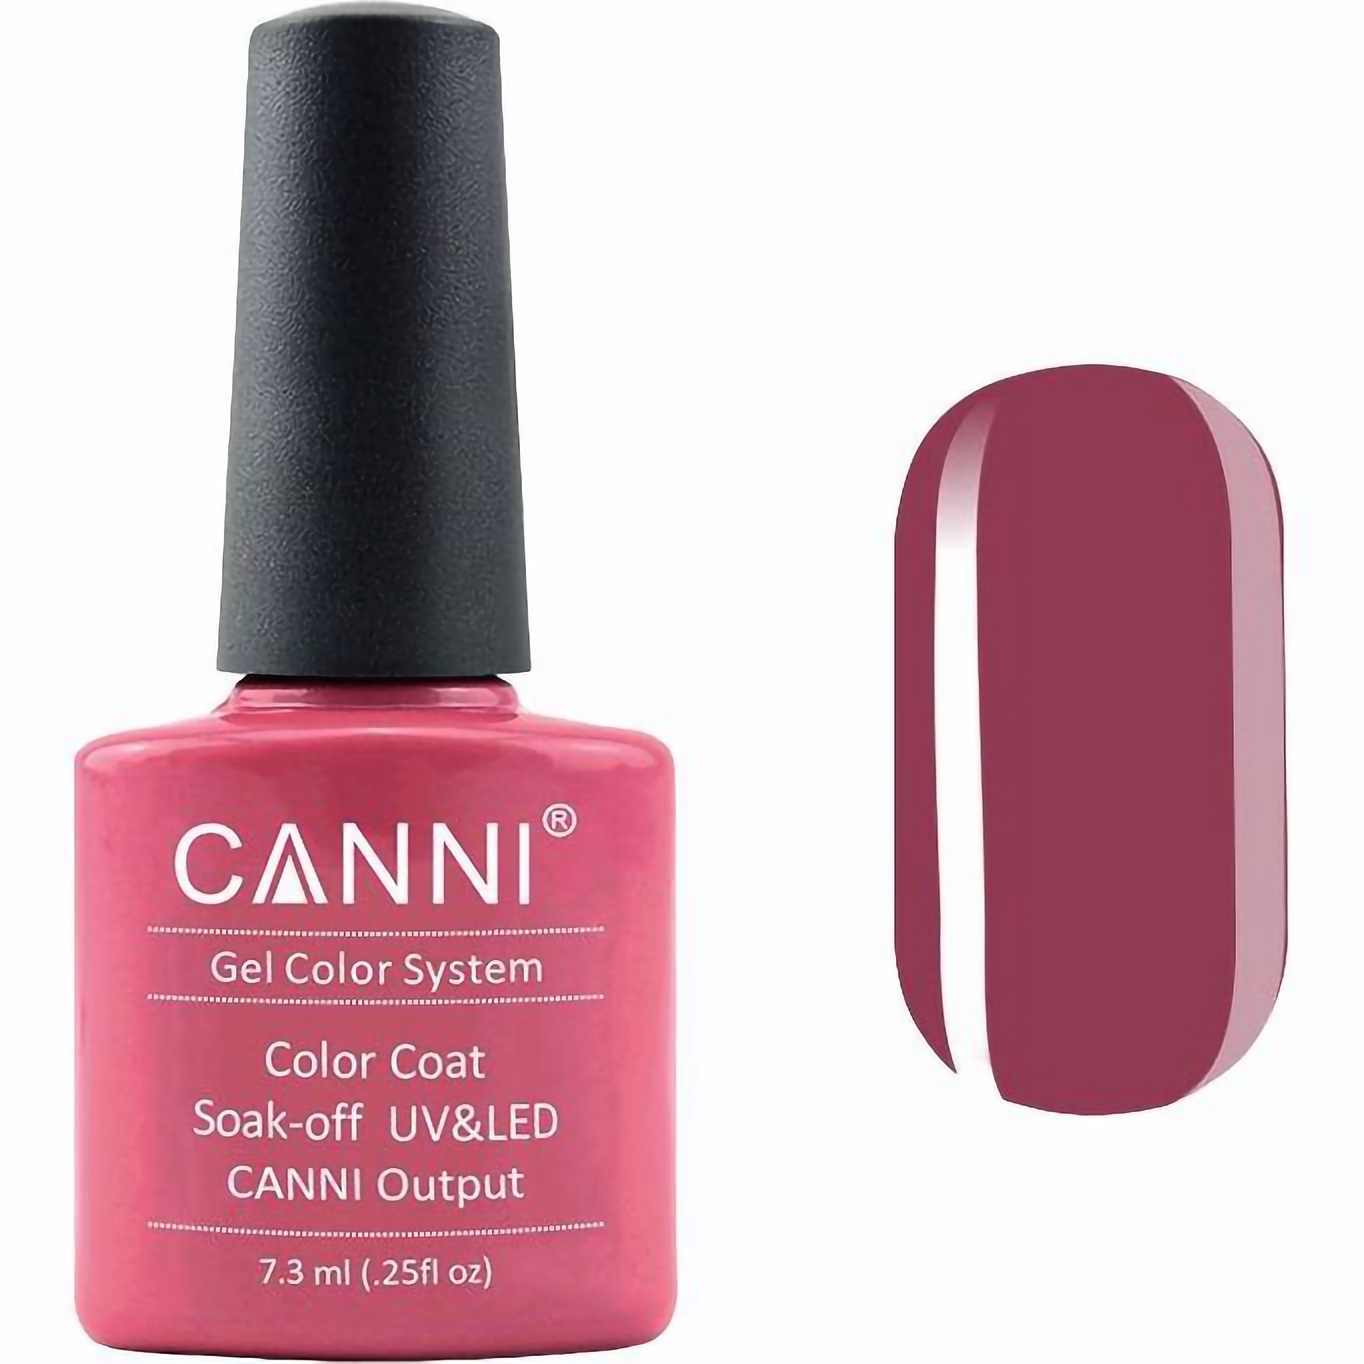 Гель-лак Canni Color Coat Soak-off UV&LED 119 розово-коралловый 7.3 мл - фото 1